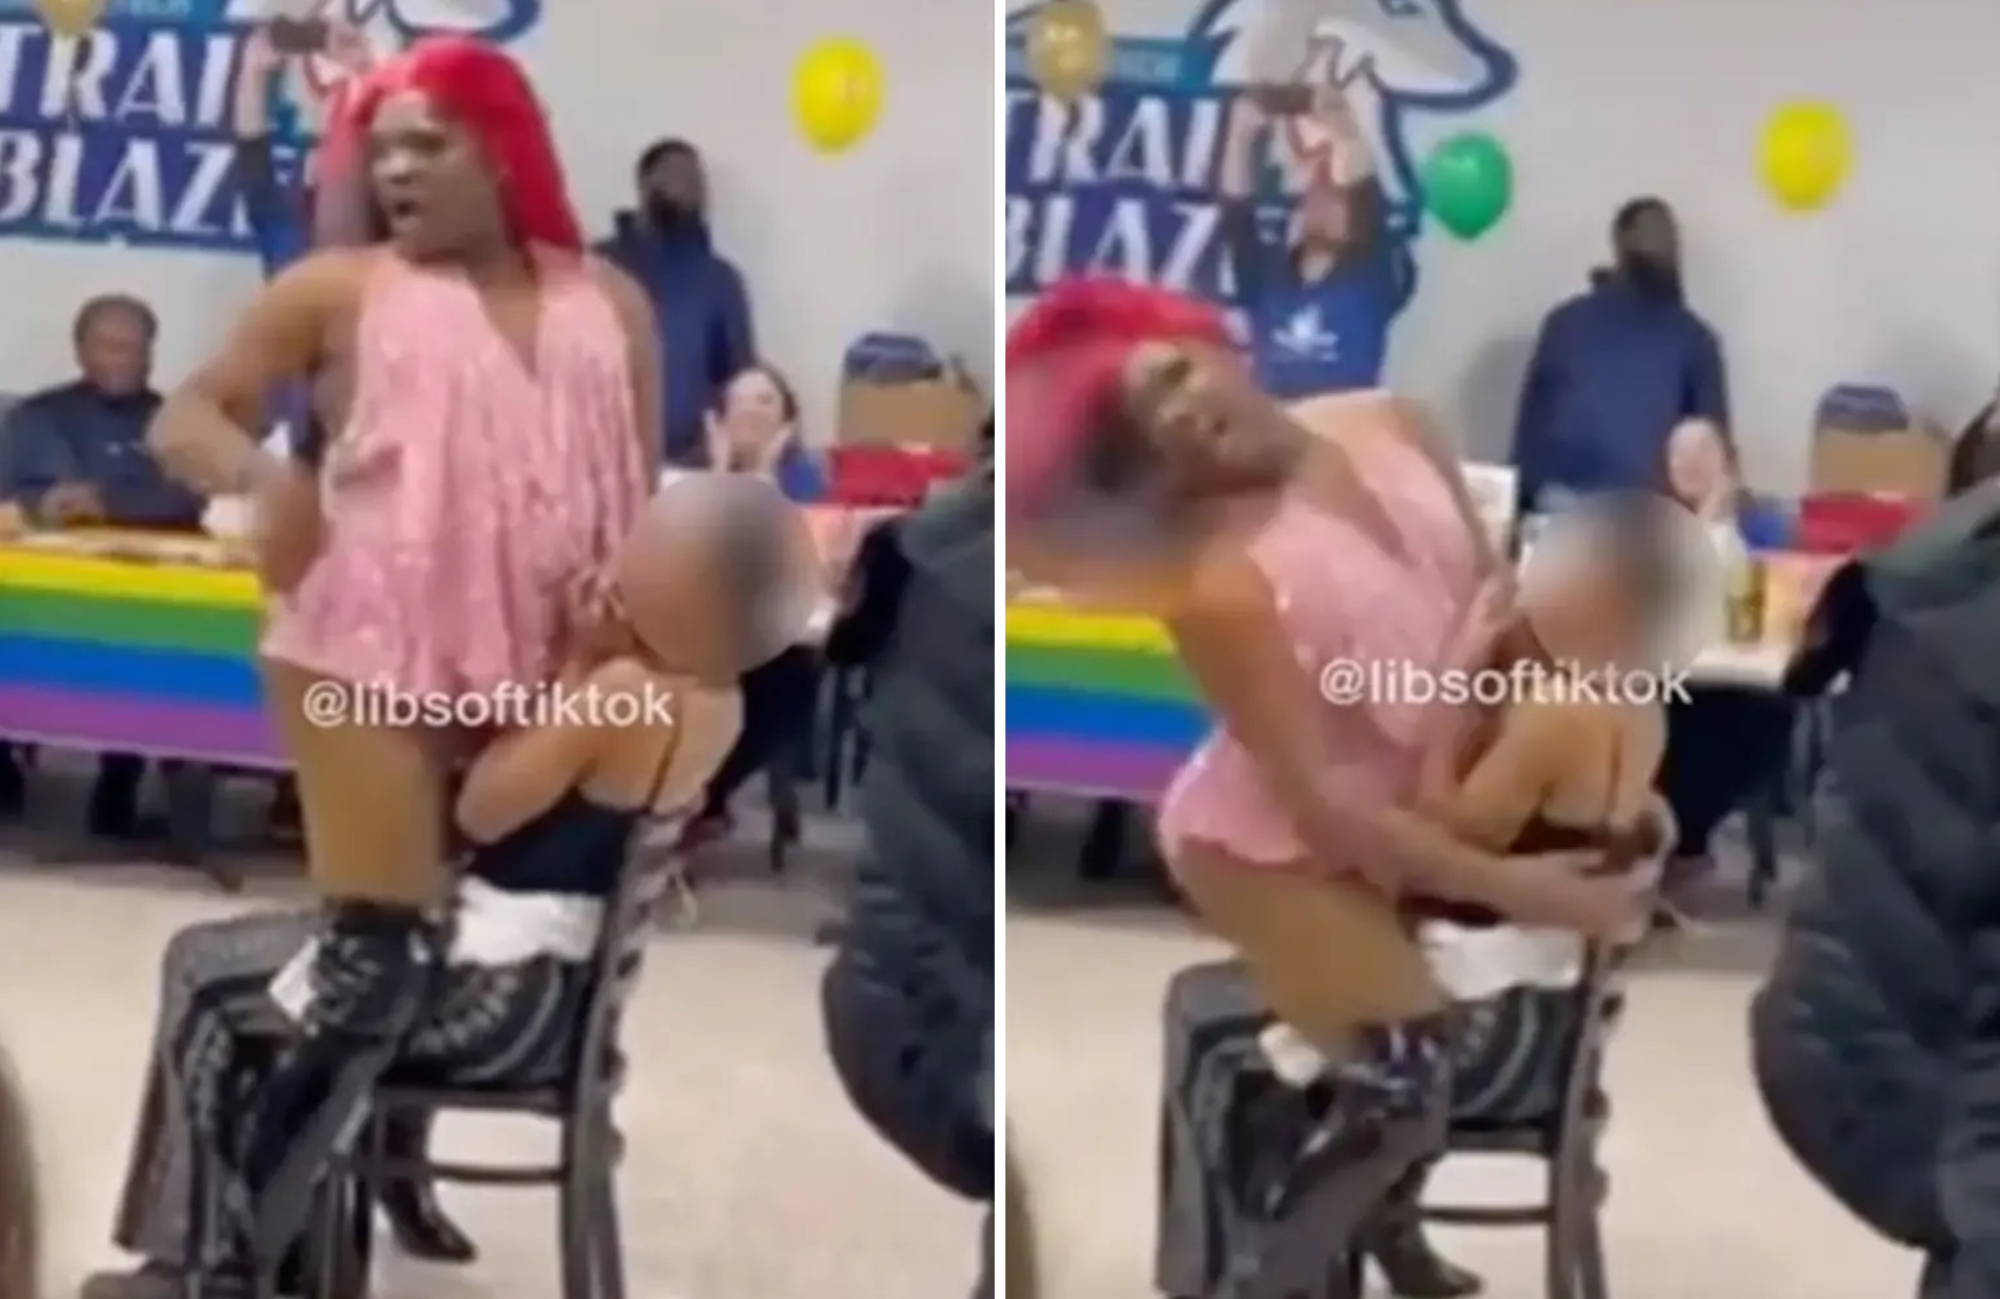 Drag queen causa indignação ao fazer dança erótica em cima de aluna